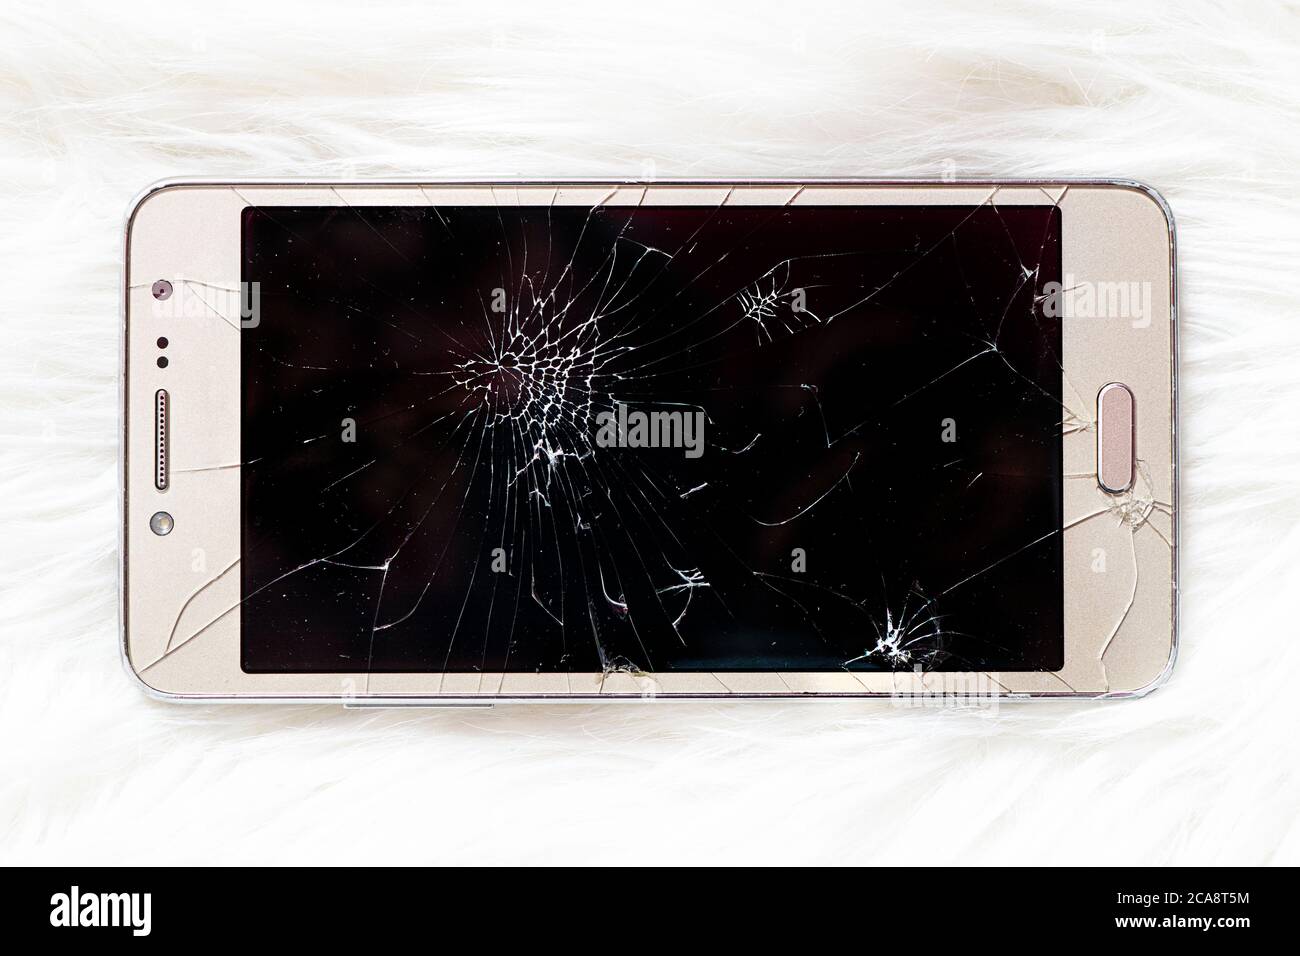 Un ancien iPhone avec un écran noir cassé sur fond blanc. Banque D'Images